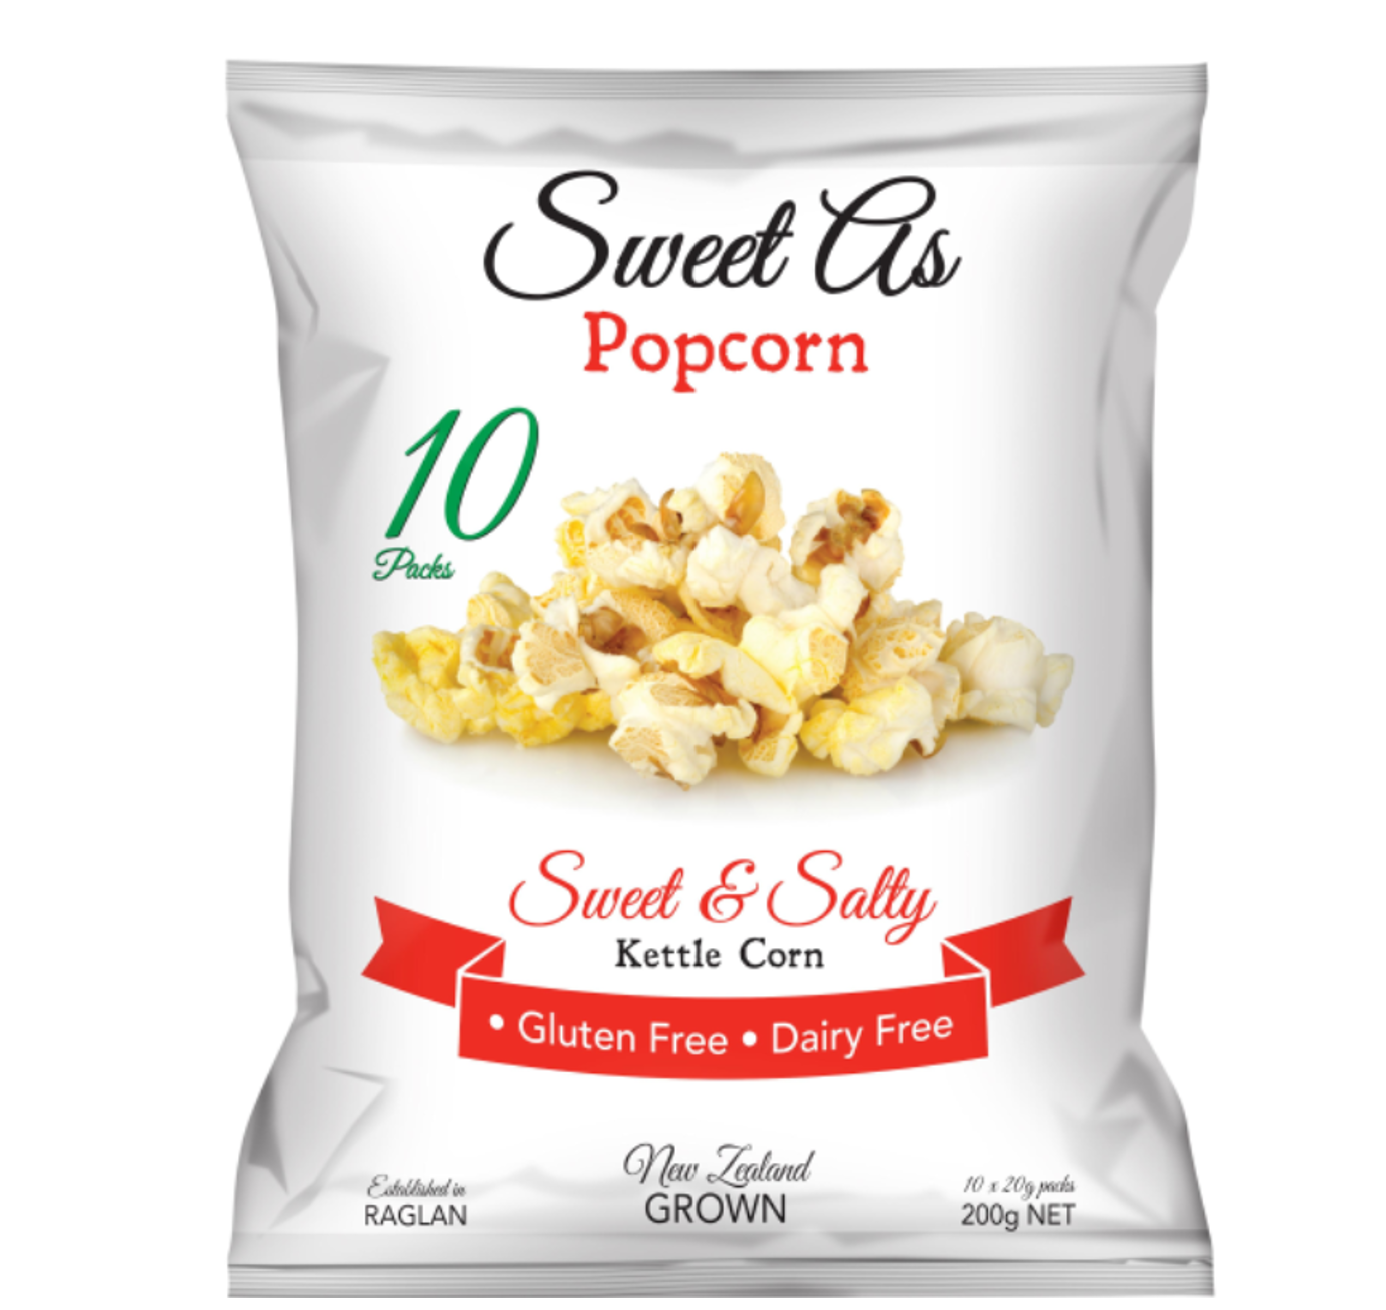 Sweet As Sweet & Salty Kettle Corn Popcorn 10pk 200g